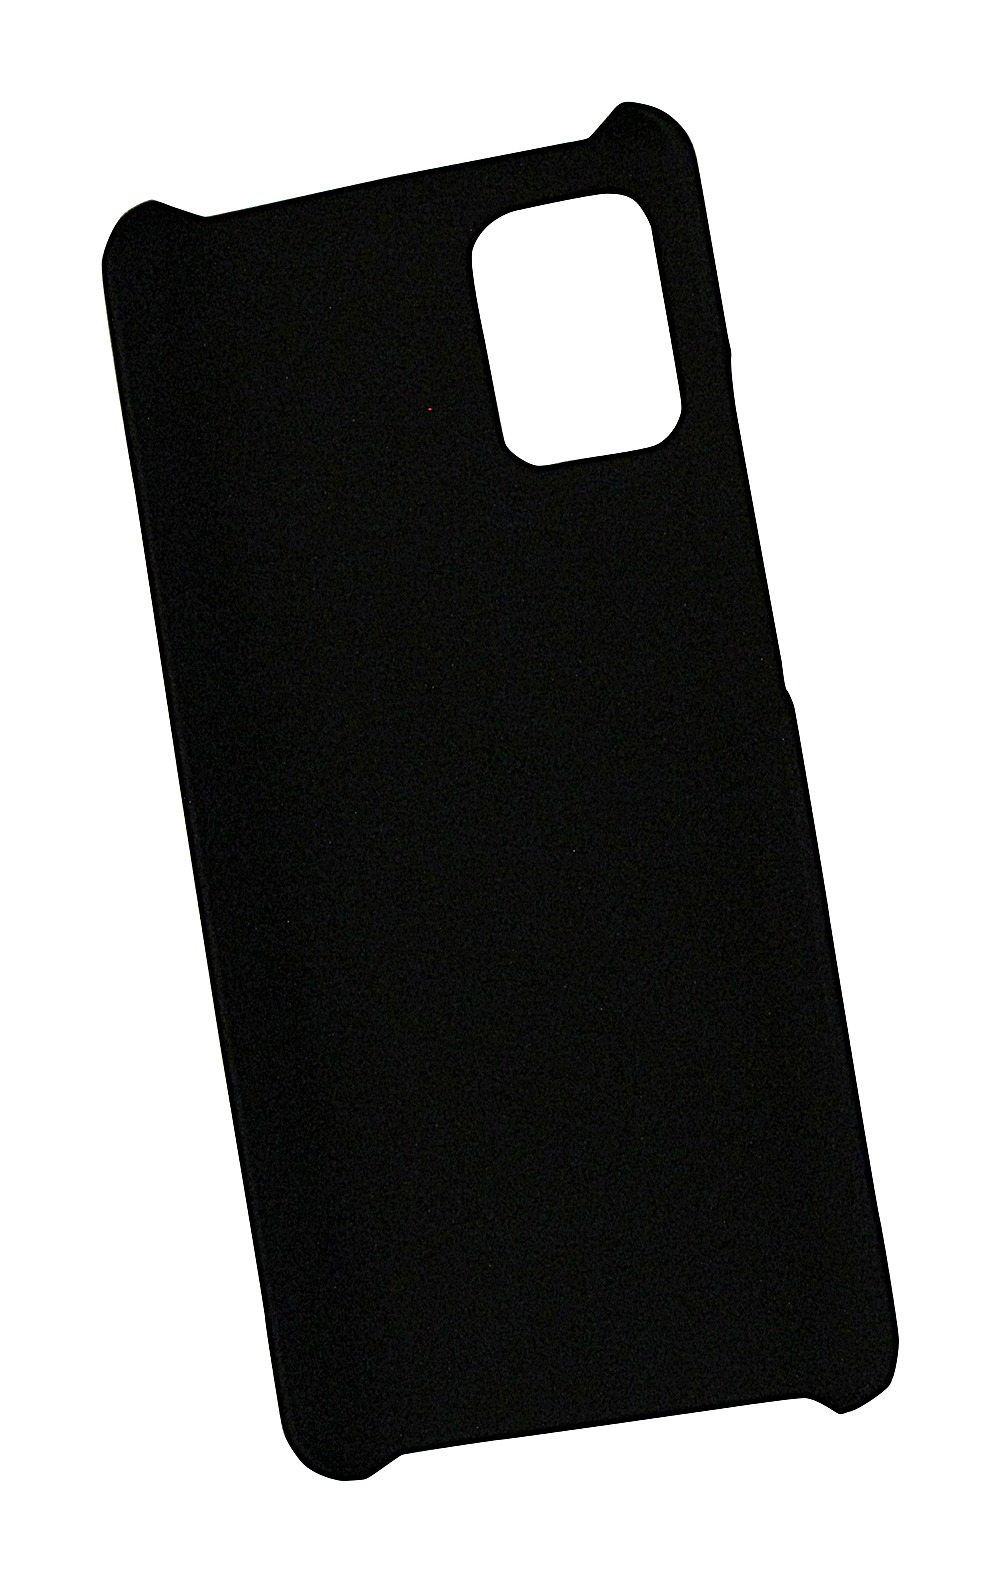 Skimblocker XL Magnet Wallet Samsung Galaxy A51 5G (A516B/DS)